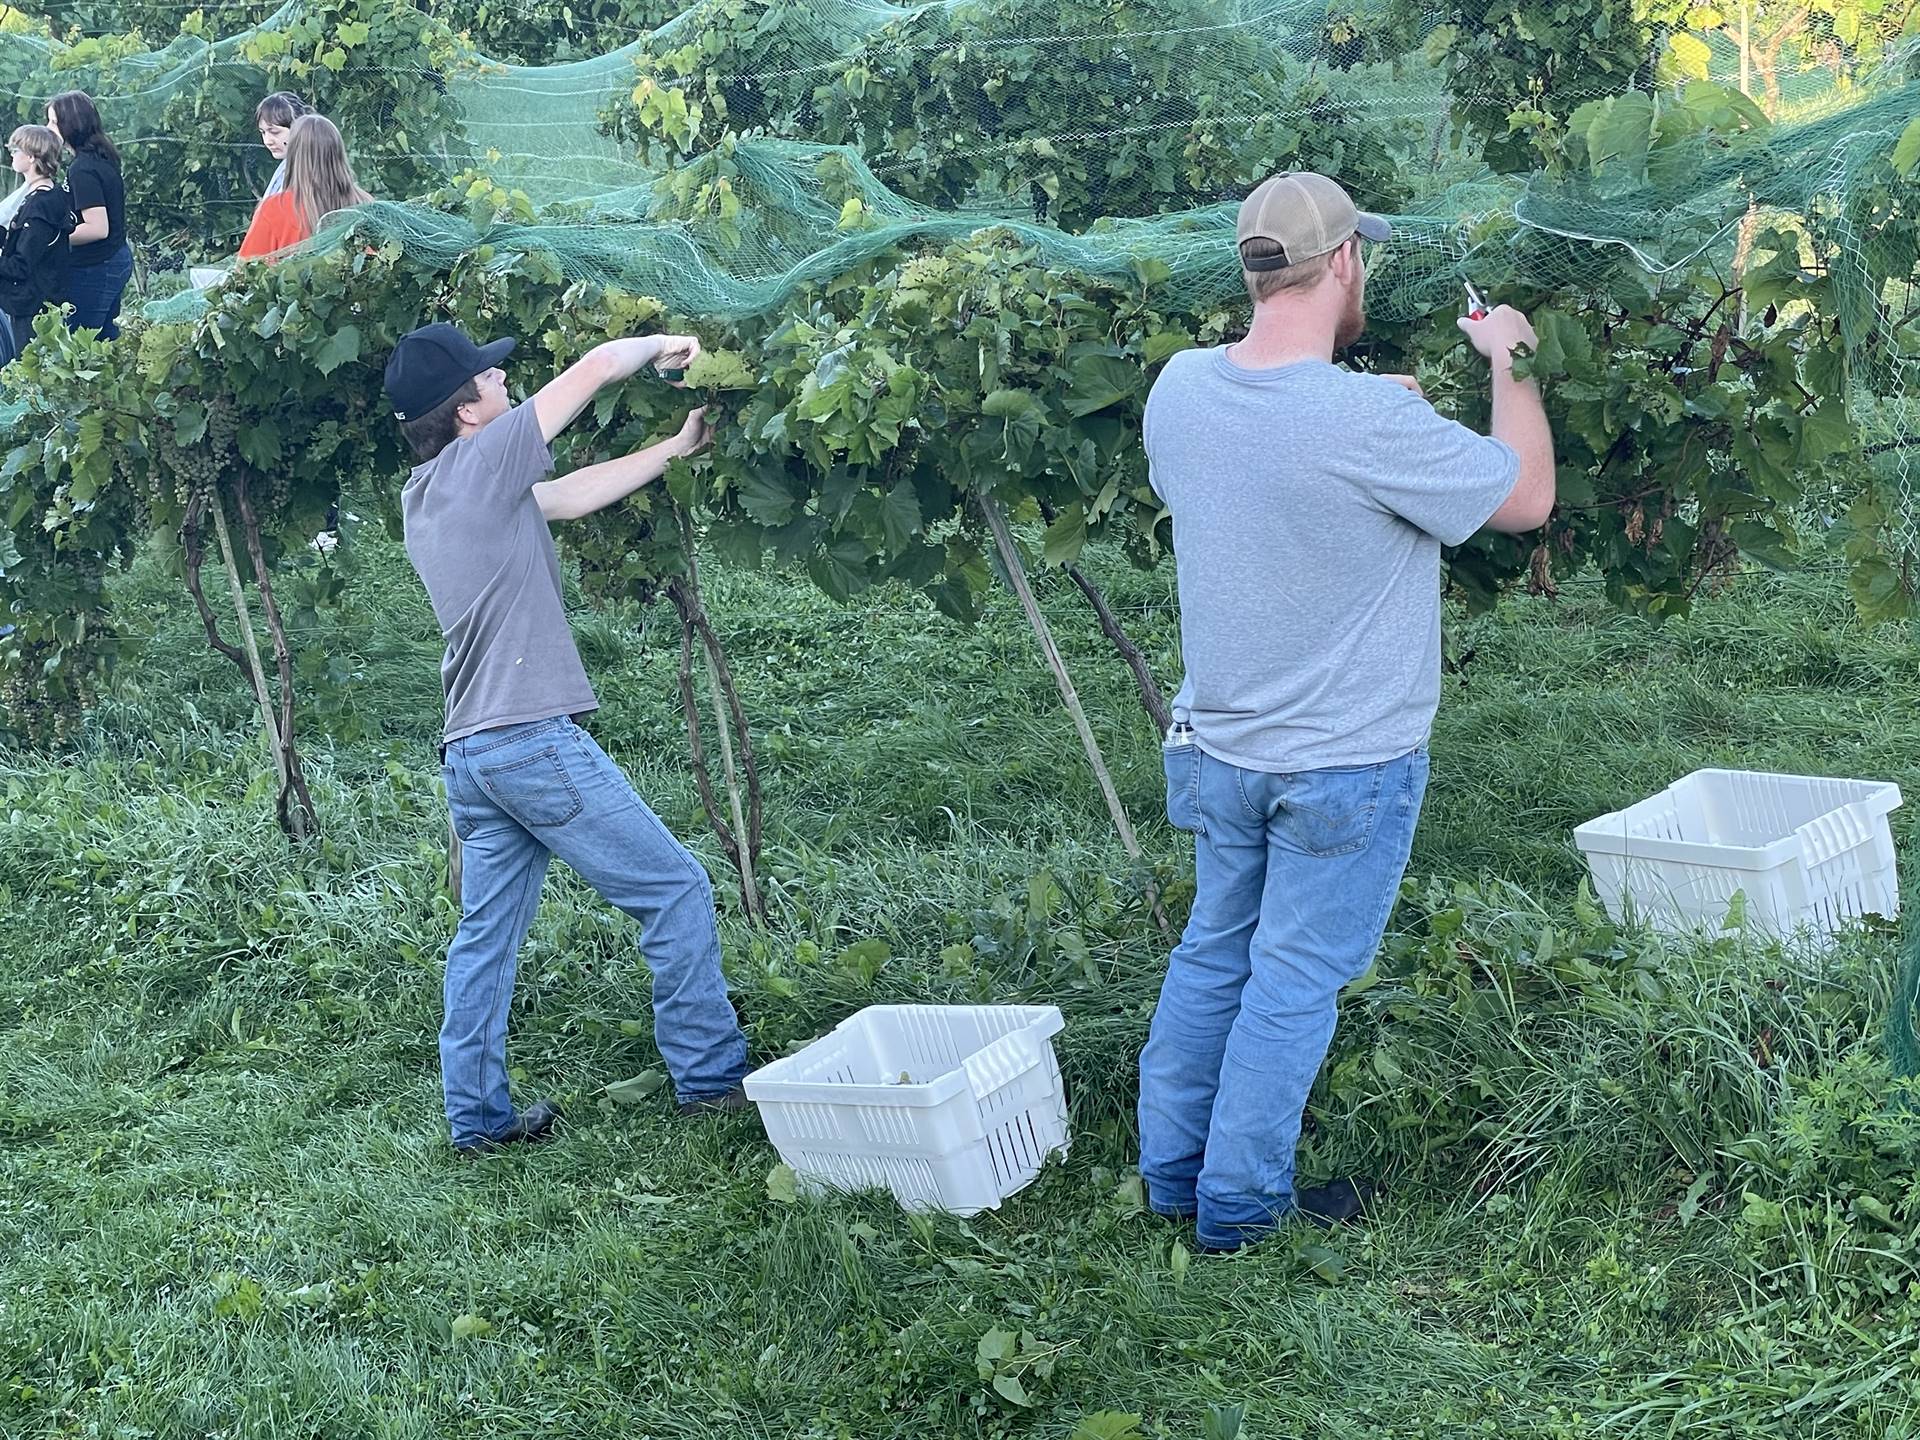 FFA Harvesting Grapes at the Vineyard